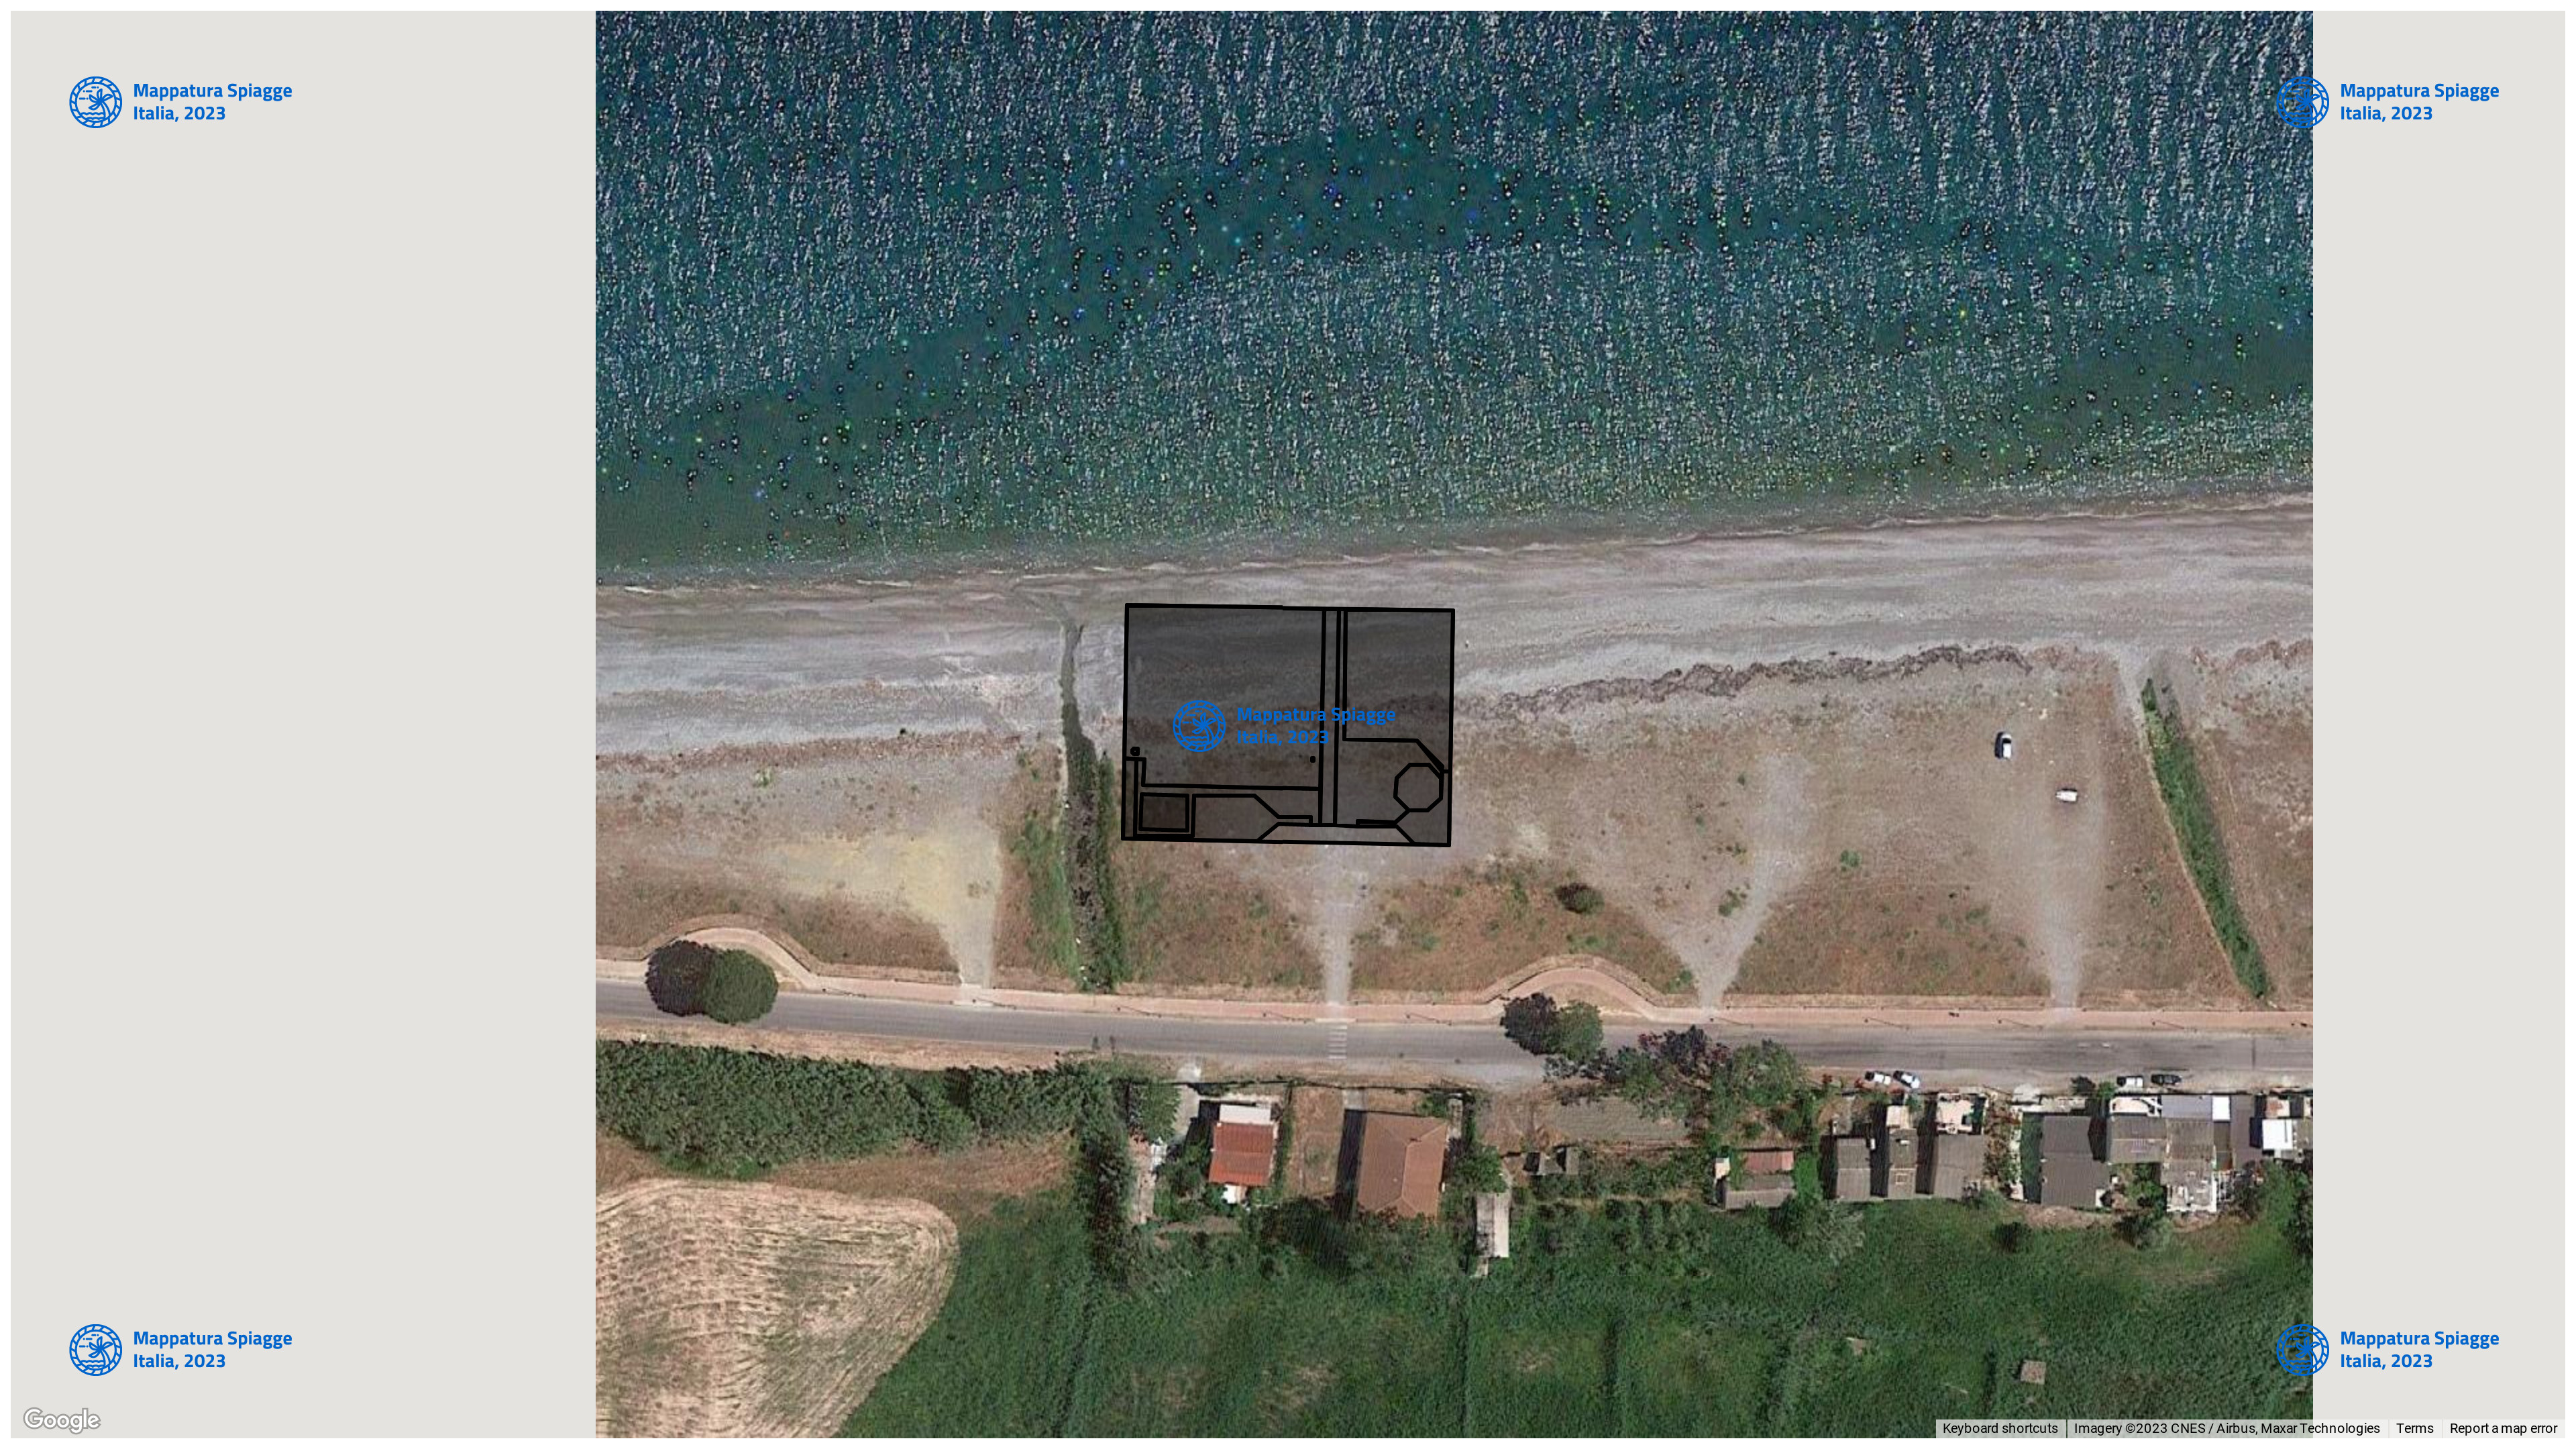 Foto Satellitare - Google Maps - Comune Corigliano Rossano, Concessione: N. 5 / 2020 del 20-09-2023